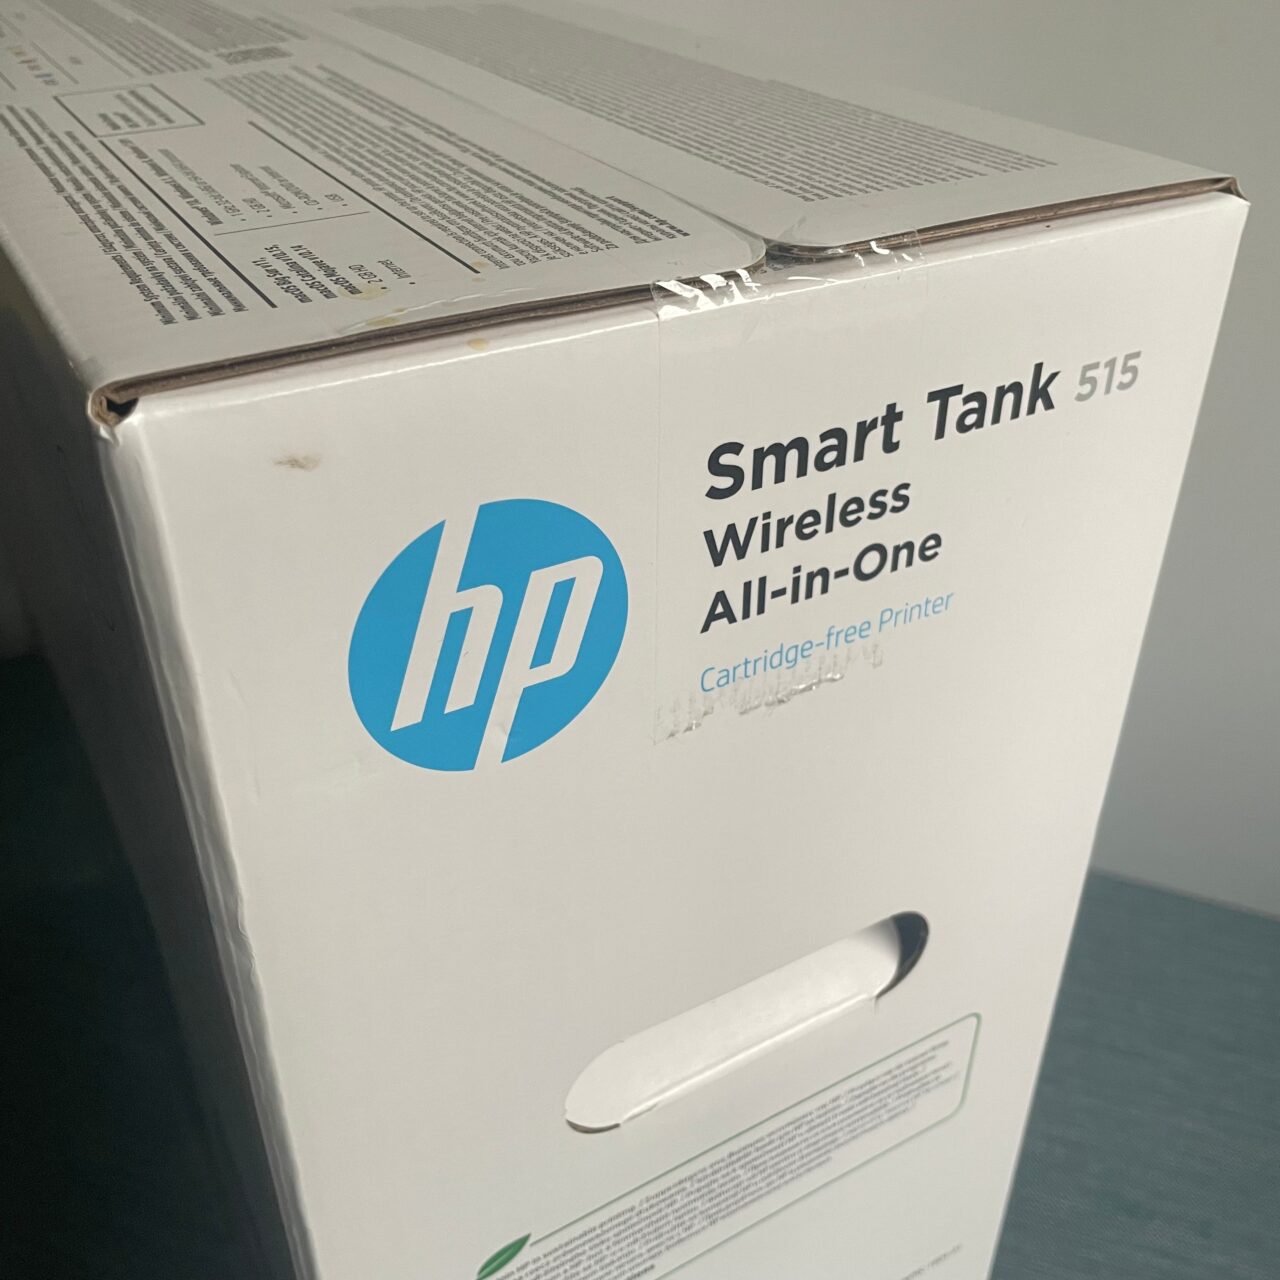 Kartonowe opakowanie drukarki HP Smart Tank 515 Wireless All-in-One z zamazanym tekstem i lekko zniszczonym rogiem.